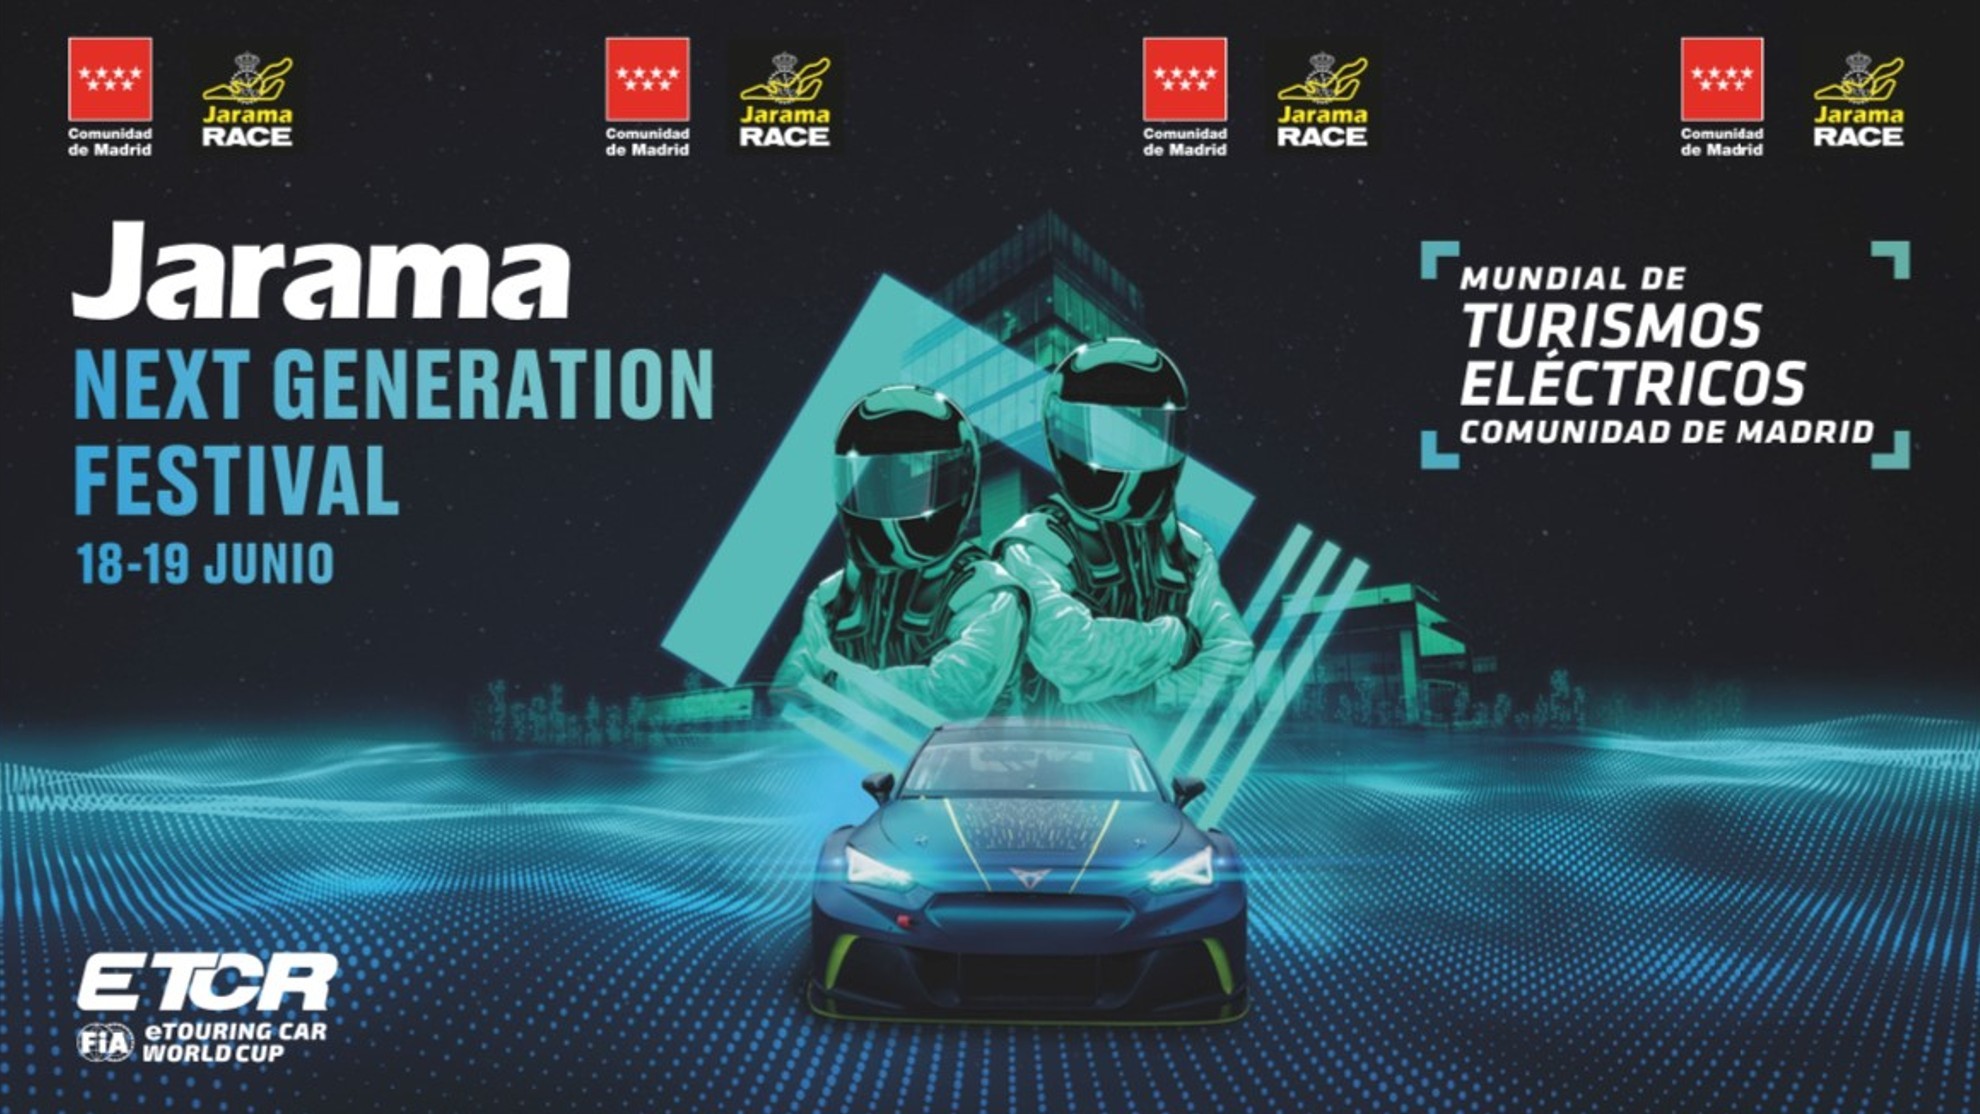 FIA ETCR - Jarama Next Generation Festival - 18 y 19 de junio - Circuito del Jarama - turismos electricos